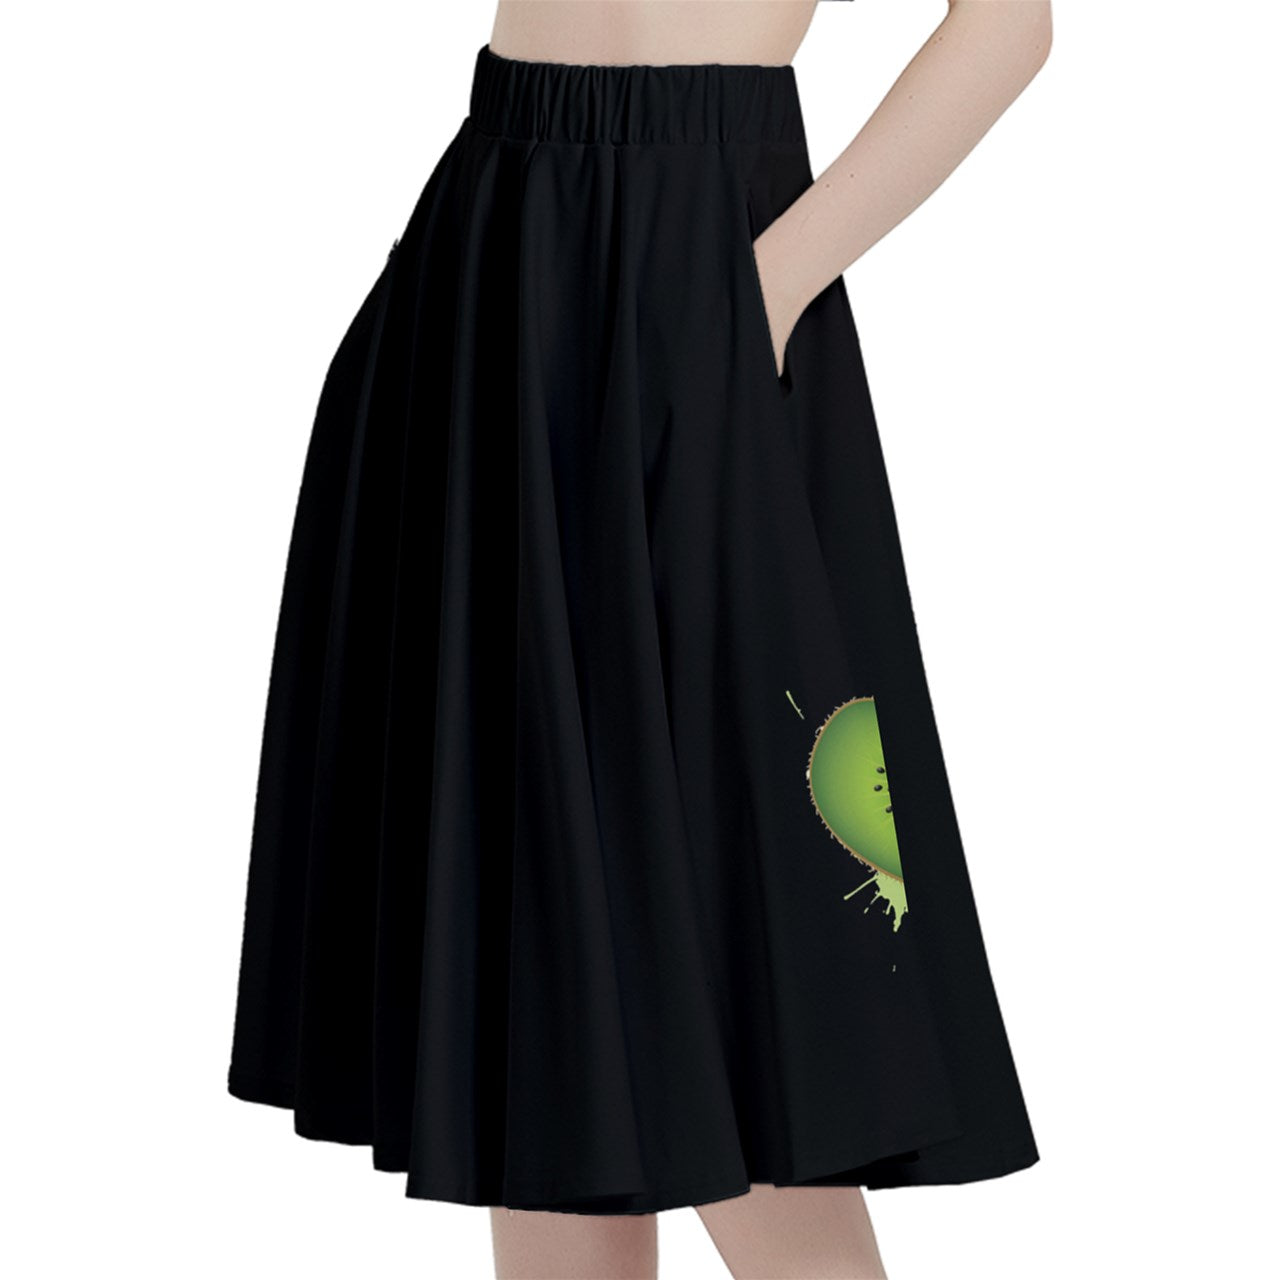 Kiwi Heart Midi Skirt With Pocket